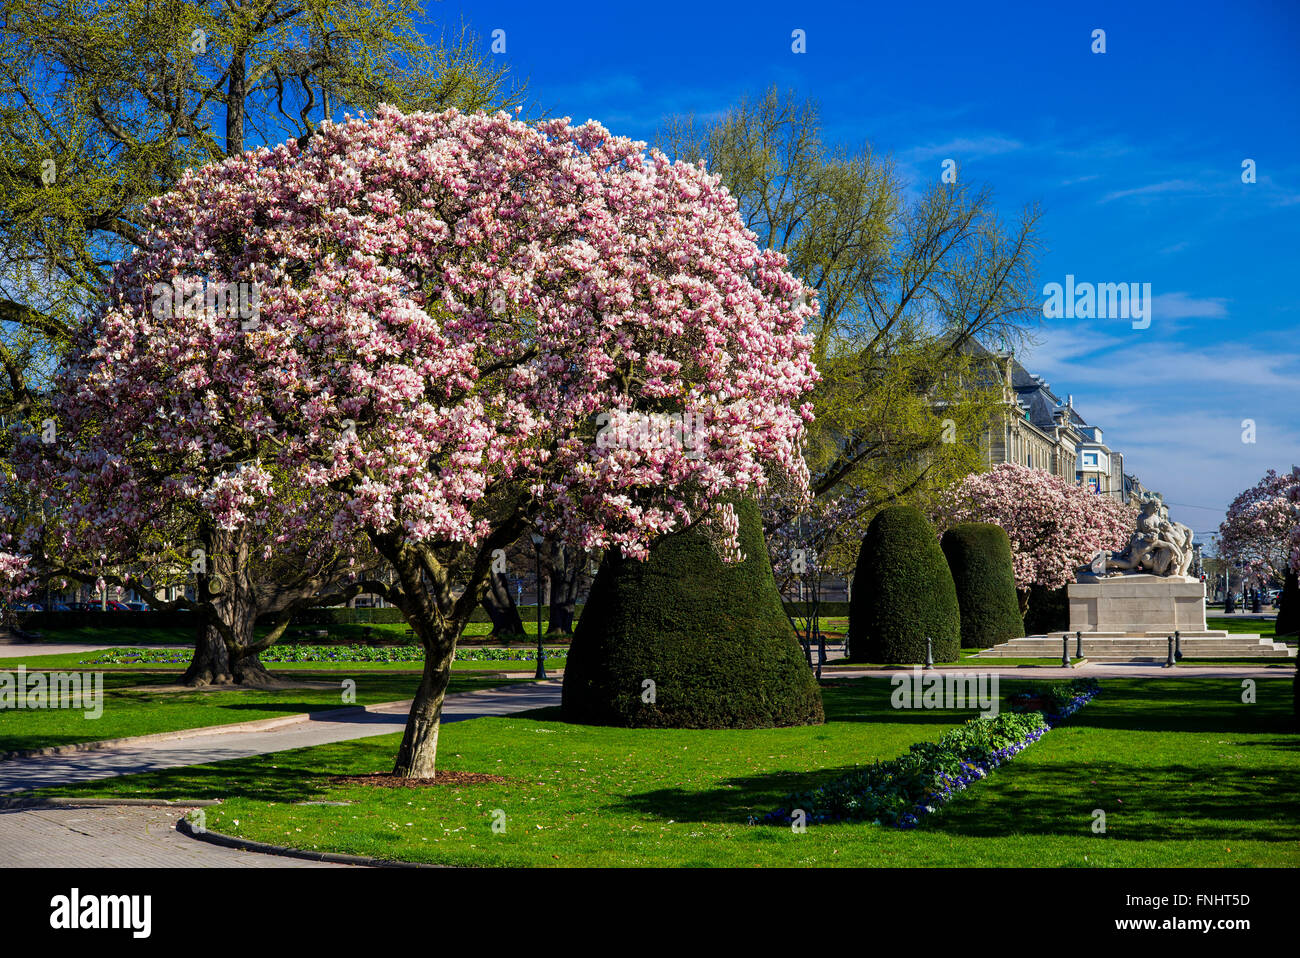 La fioritura degli alberi di magnolia, War Memorial, Place de la République square, quartiere Neustadt, Strasburgo, Alsazia, Francia, Europa Foto Stock